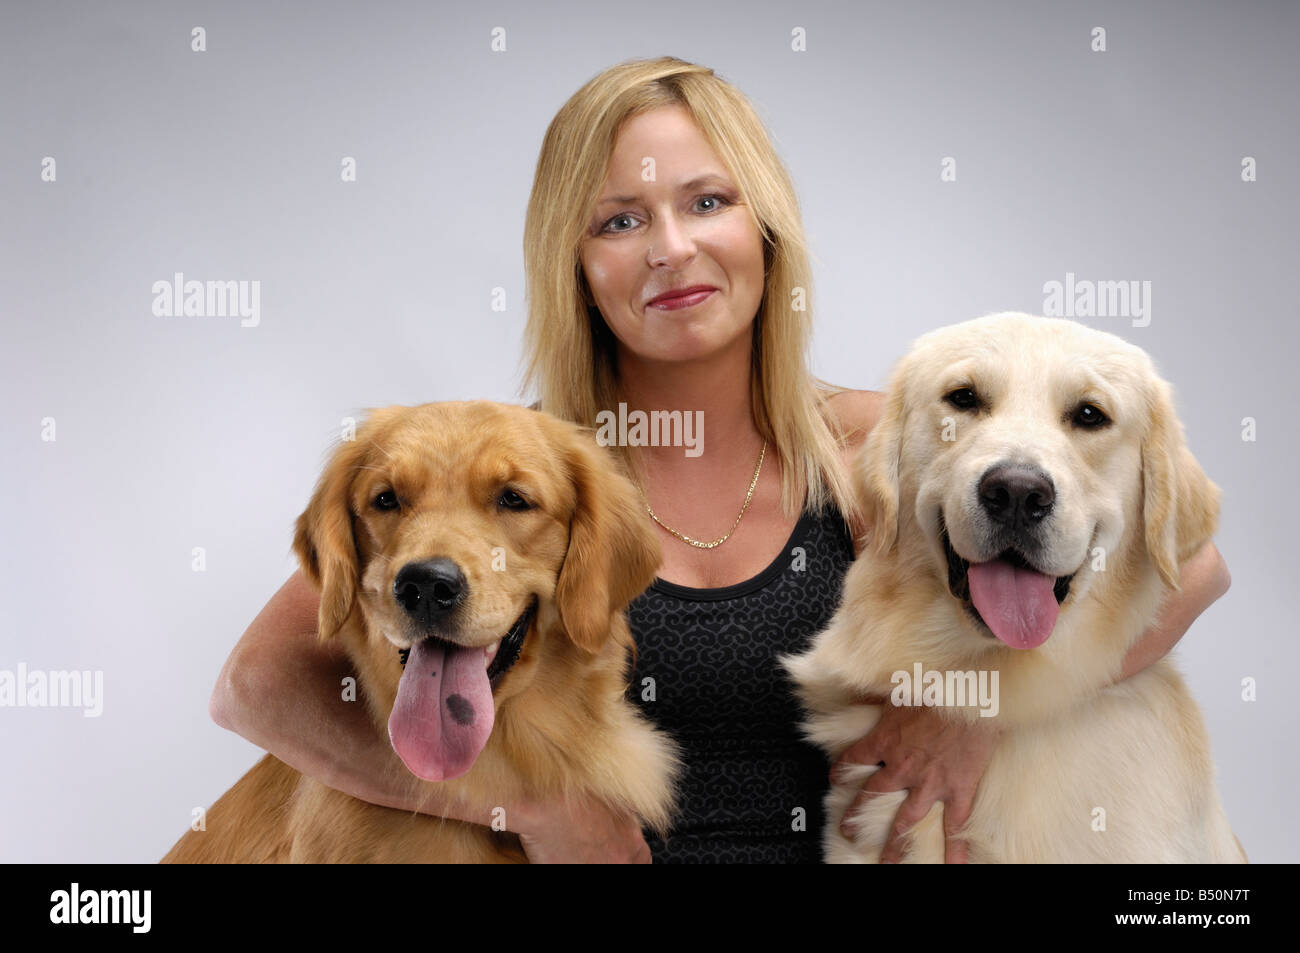 Führerschein verfügbar unter MaximImages.com - Frau mit zwei Golden Retrievers Haustieren Hundebetreuung Stockfoto